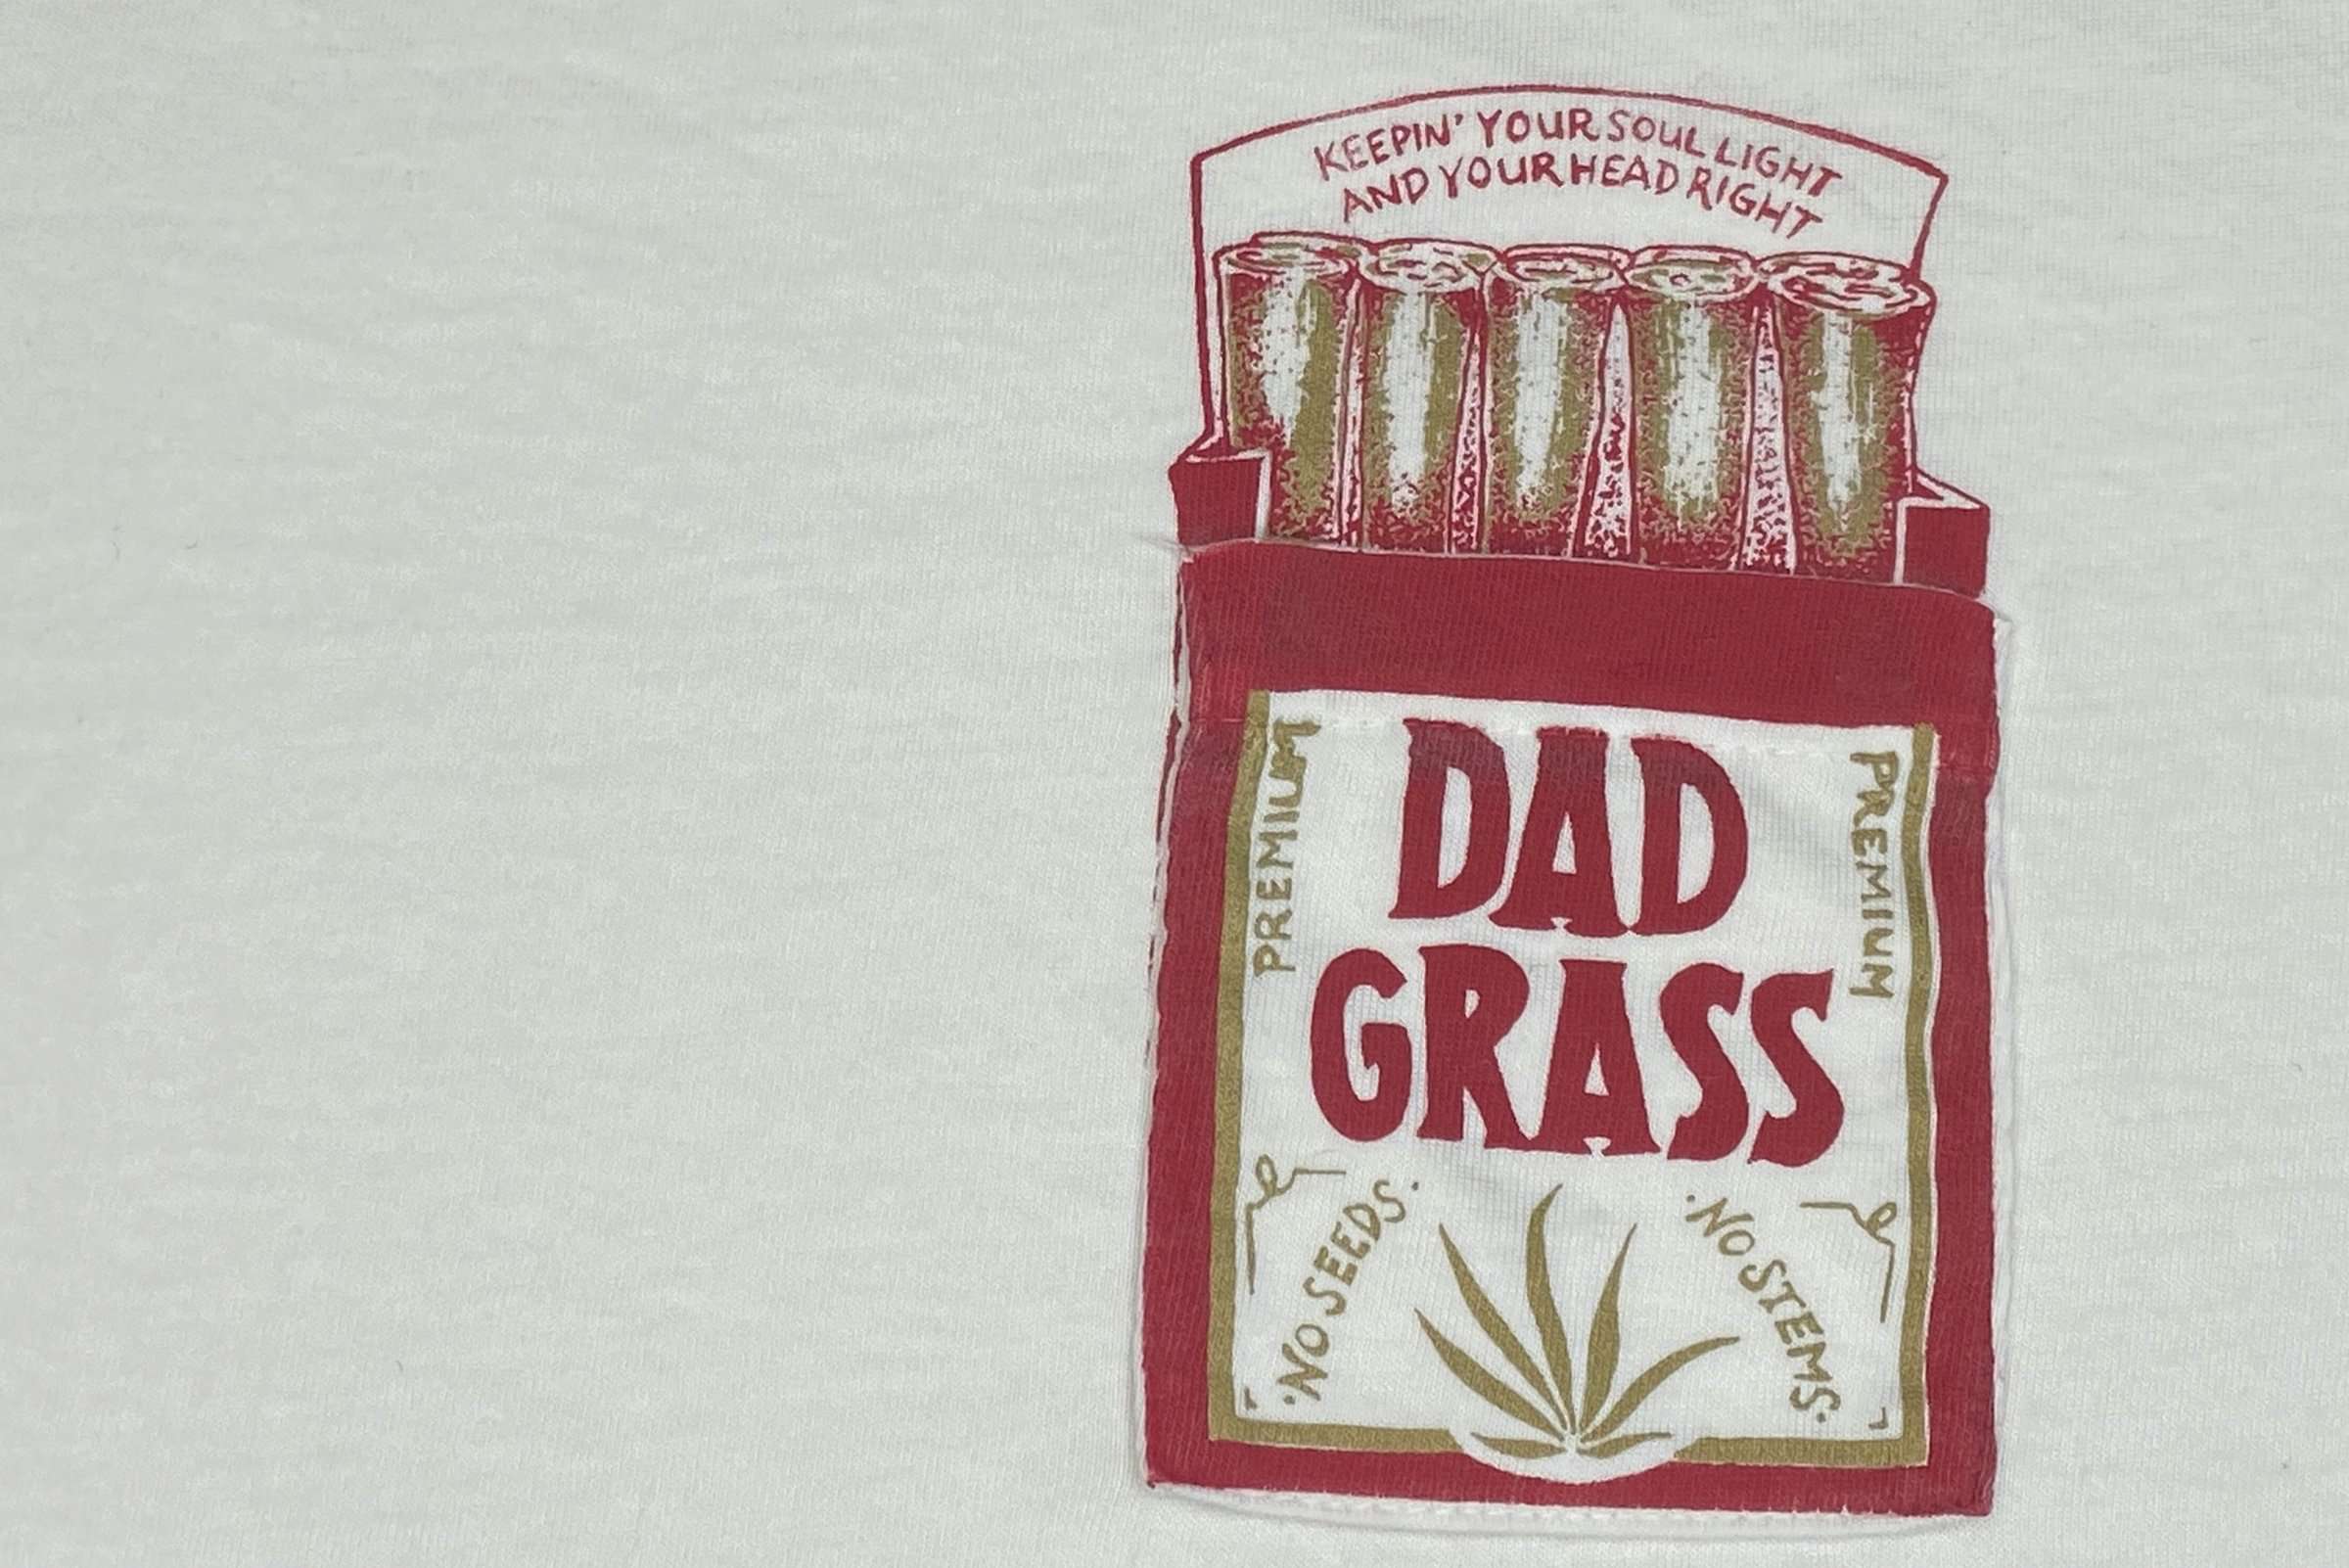 Dad Grass x Filth Mart Long Sleeve Pocket Tee - Dad Grass